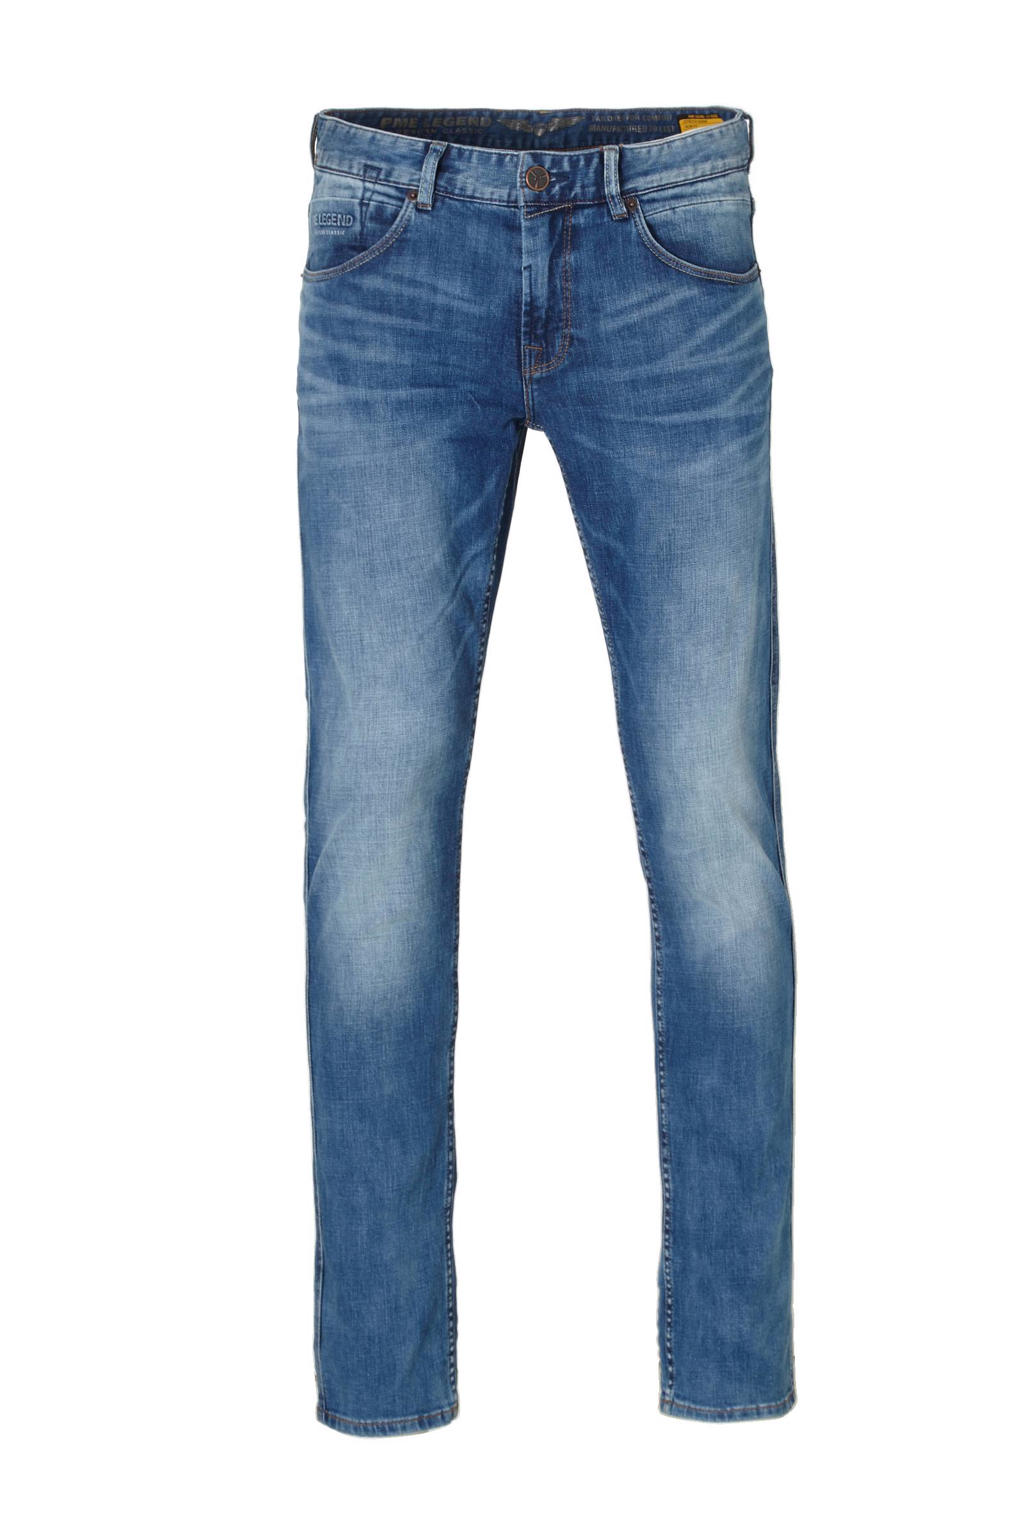 PME Legend regular straight fit jeans Nightflight FBS medium used